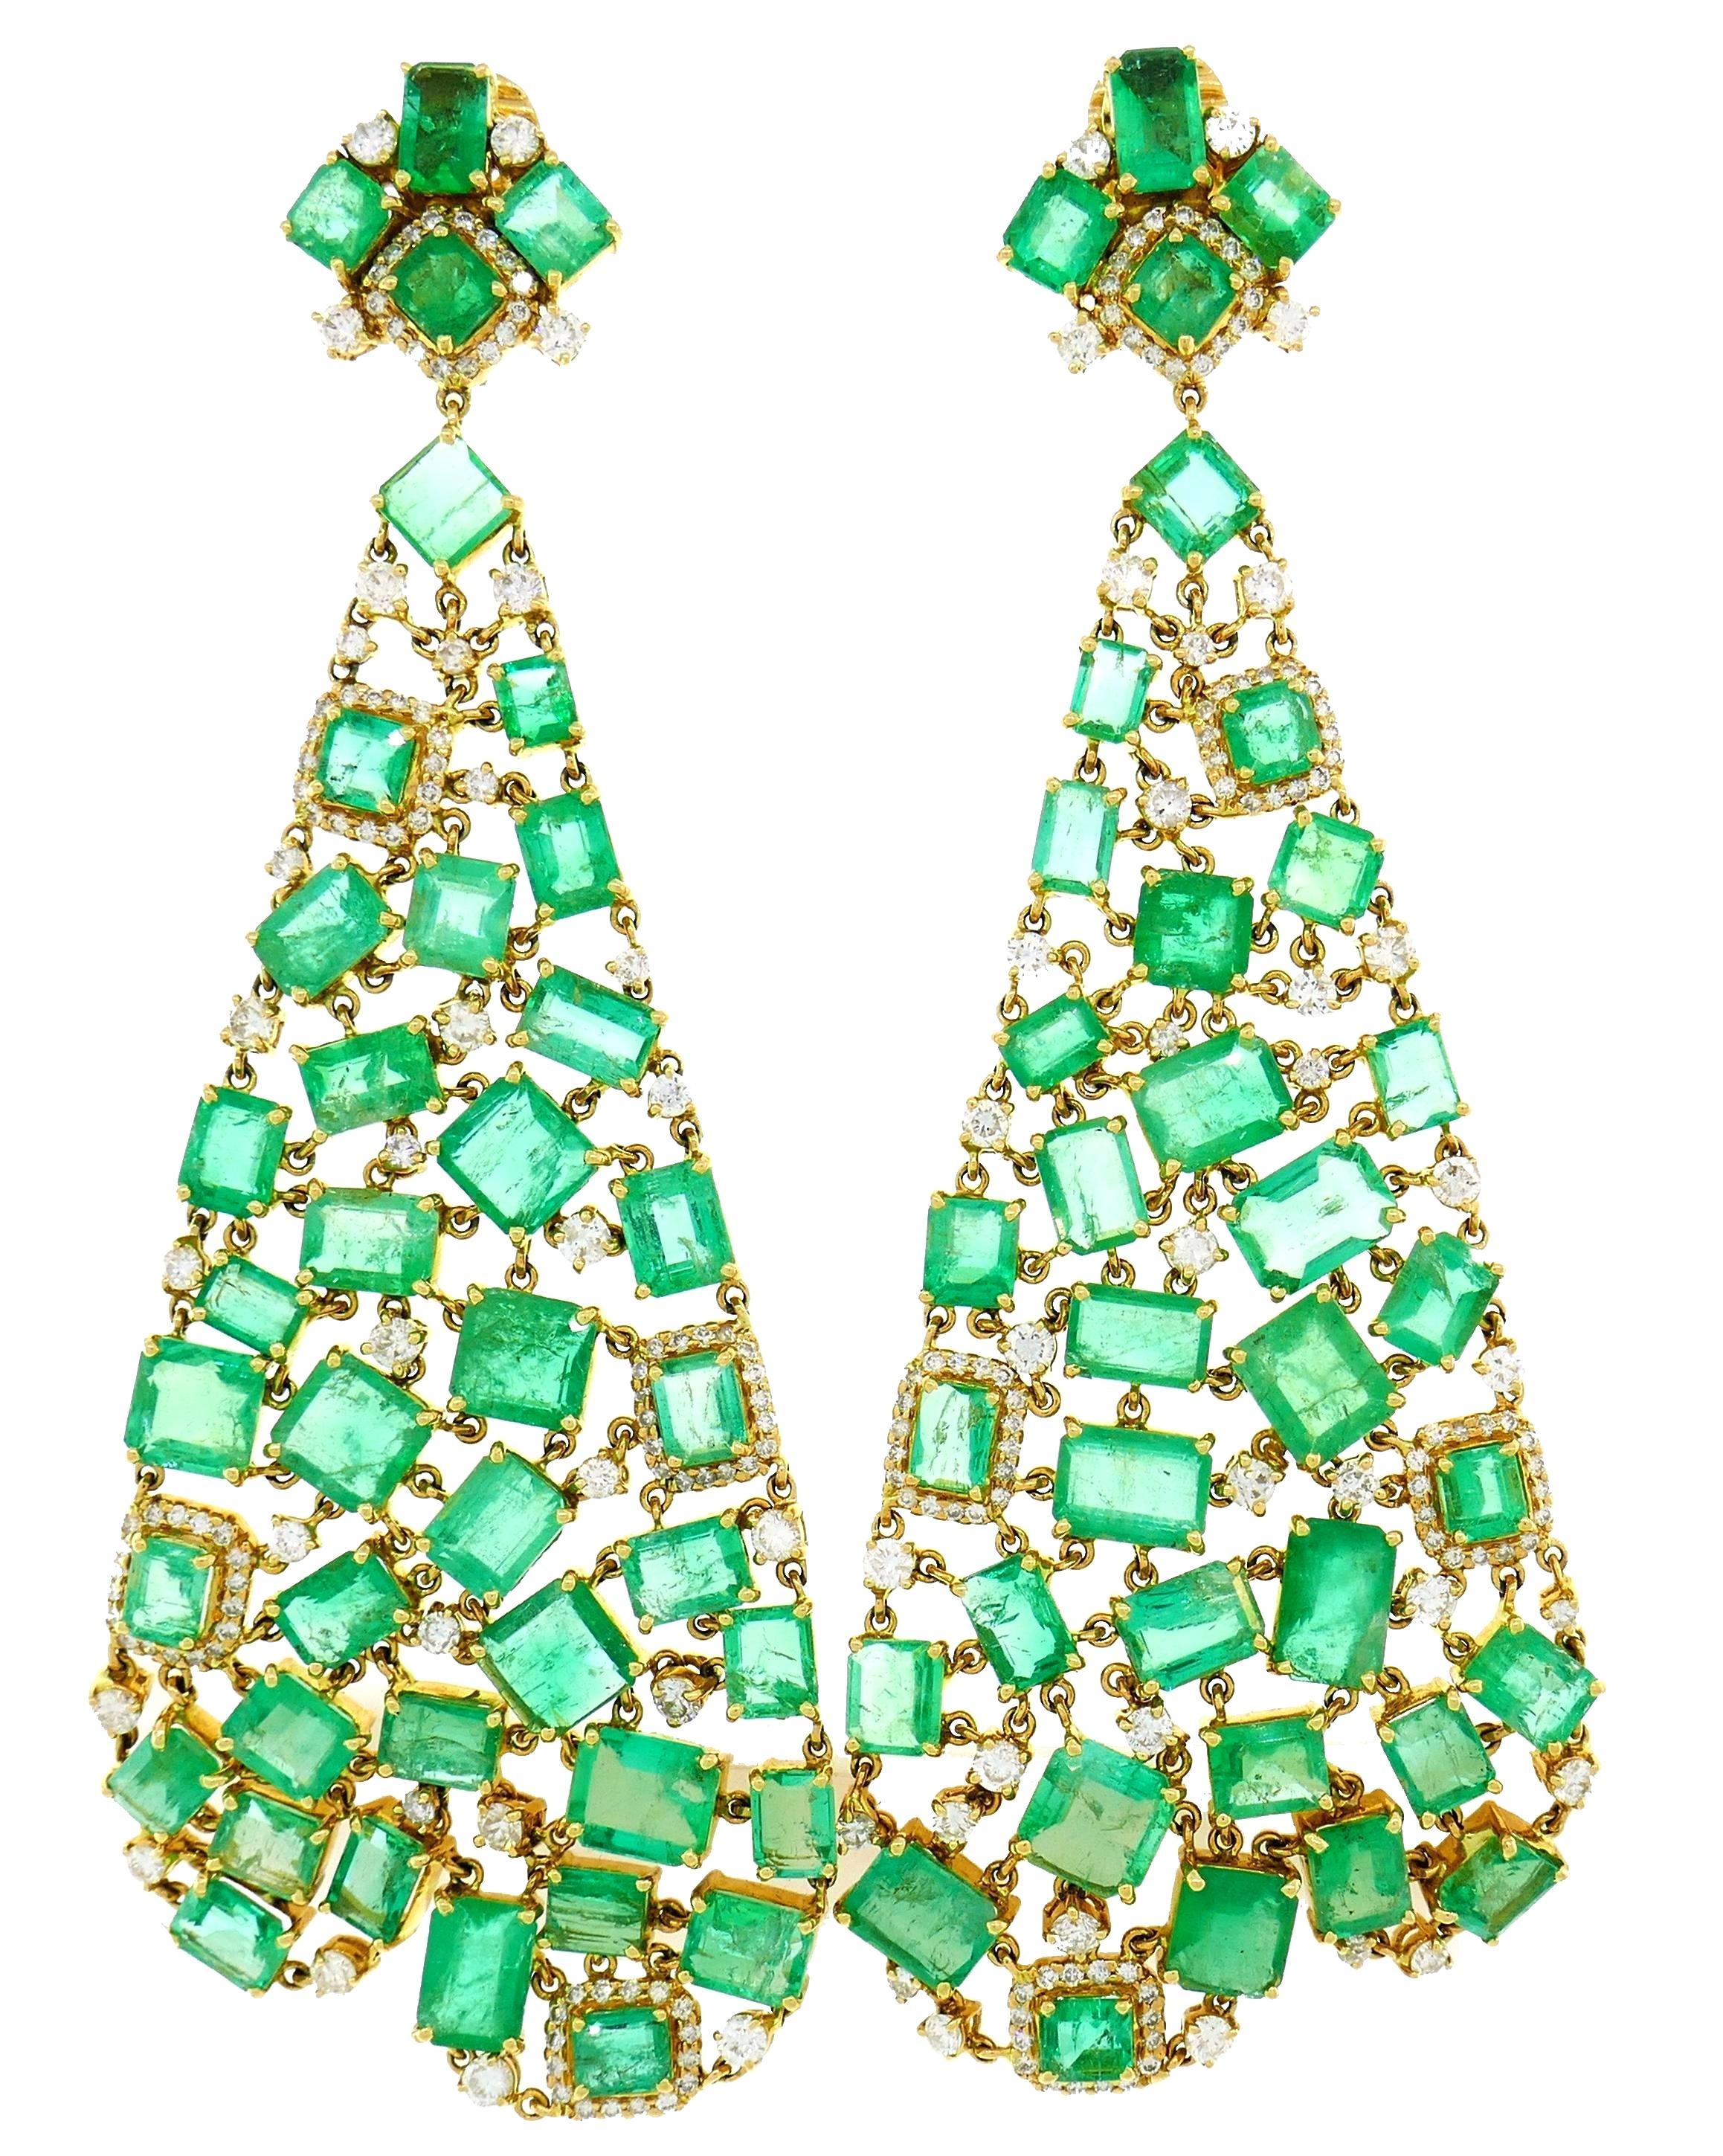 Modern 20 Carat Diamond Emerald Chandelier Earrings 18 Karat Yellow Gold For Sale